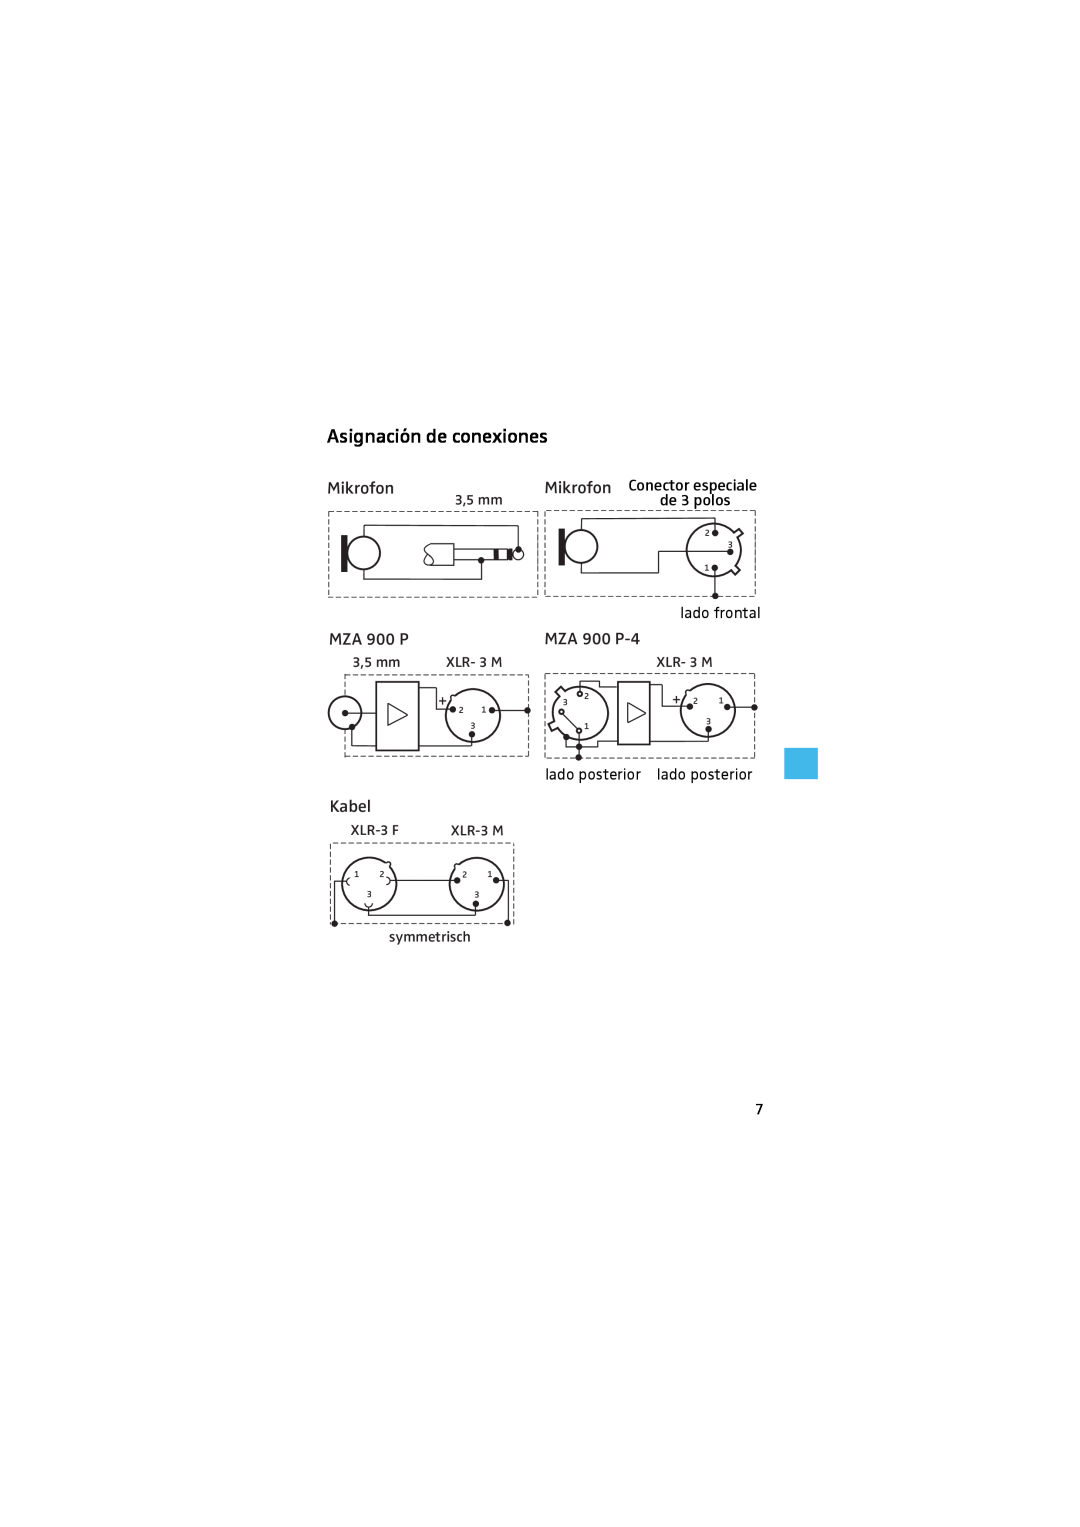 Sennheiser MZA 900 P Asignación de conexiones, 3,5 mm, Mikrofon Conector especiale, XLR- 3 M, symmetrisch, XLR-3F, XLR-3M 